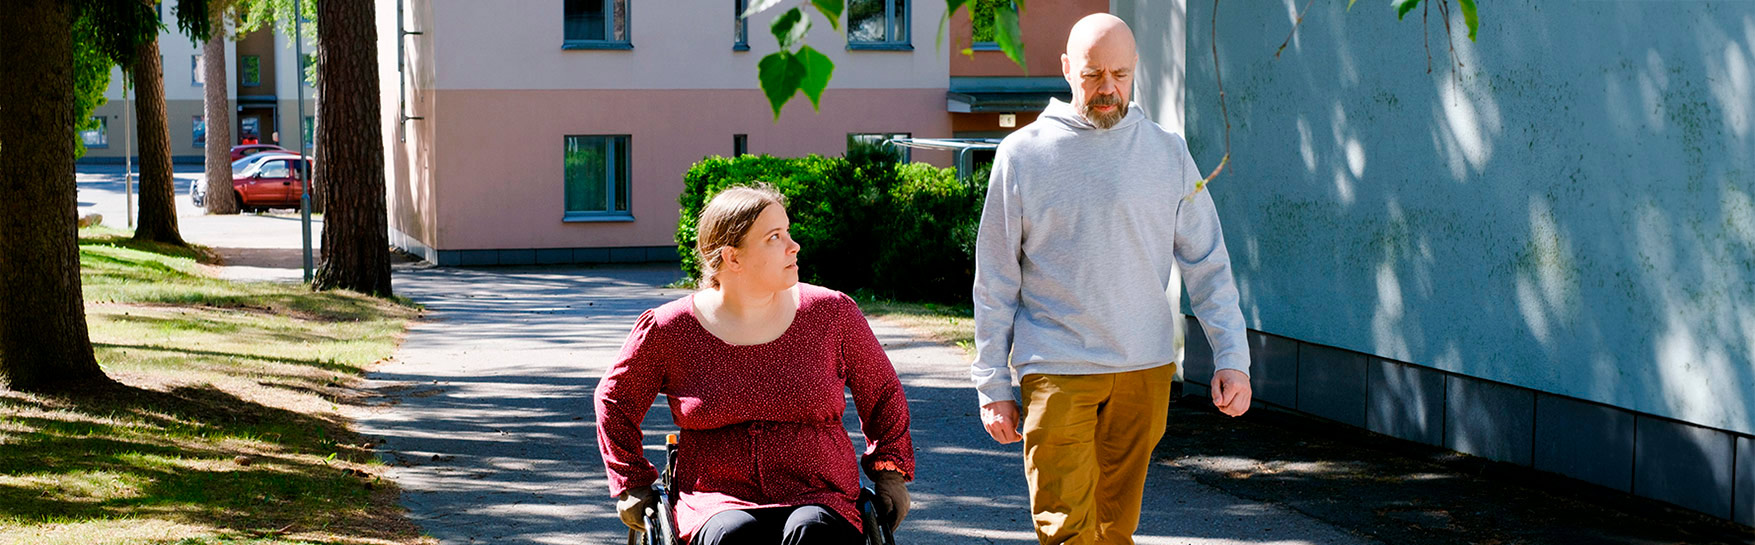 En kvinna i rullstol och en man utomhus.